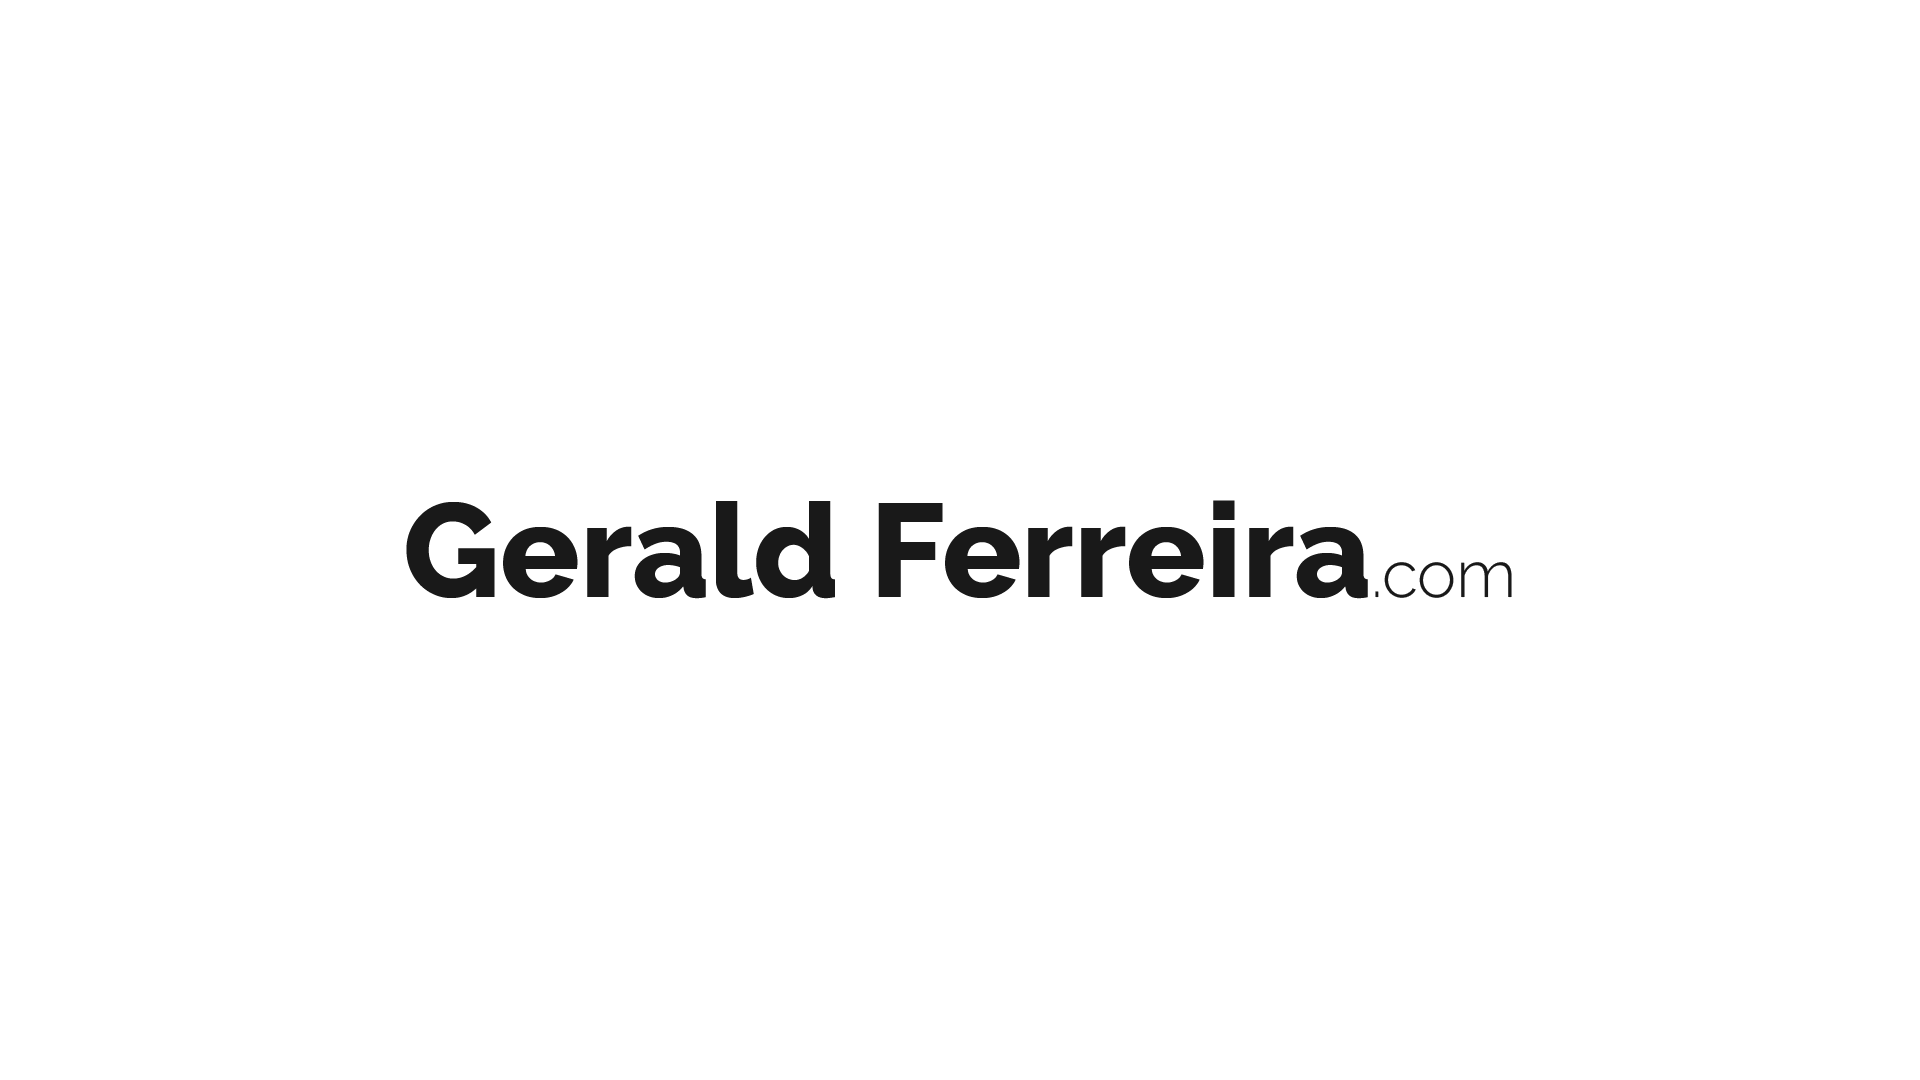 Gerald Ferreira